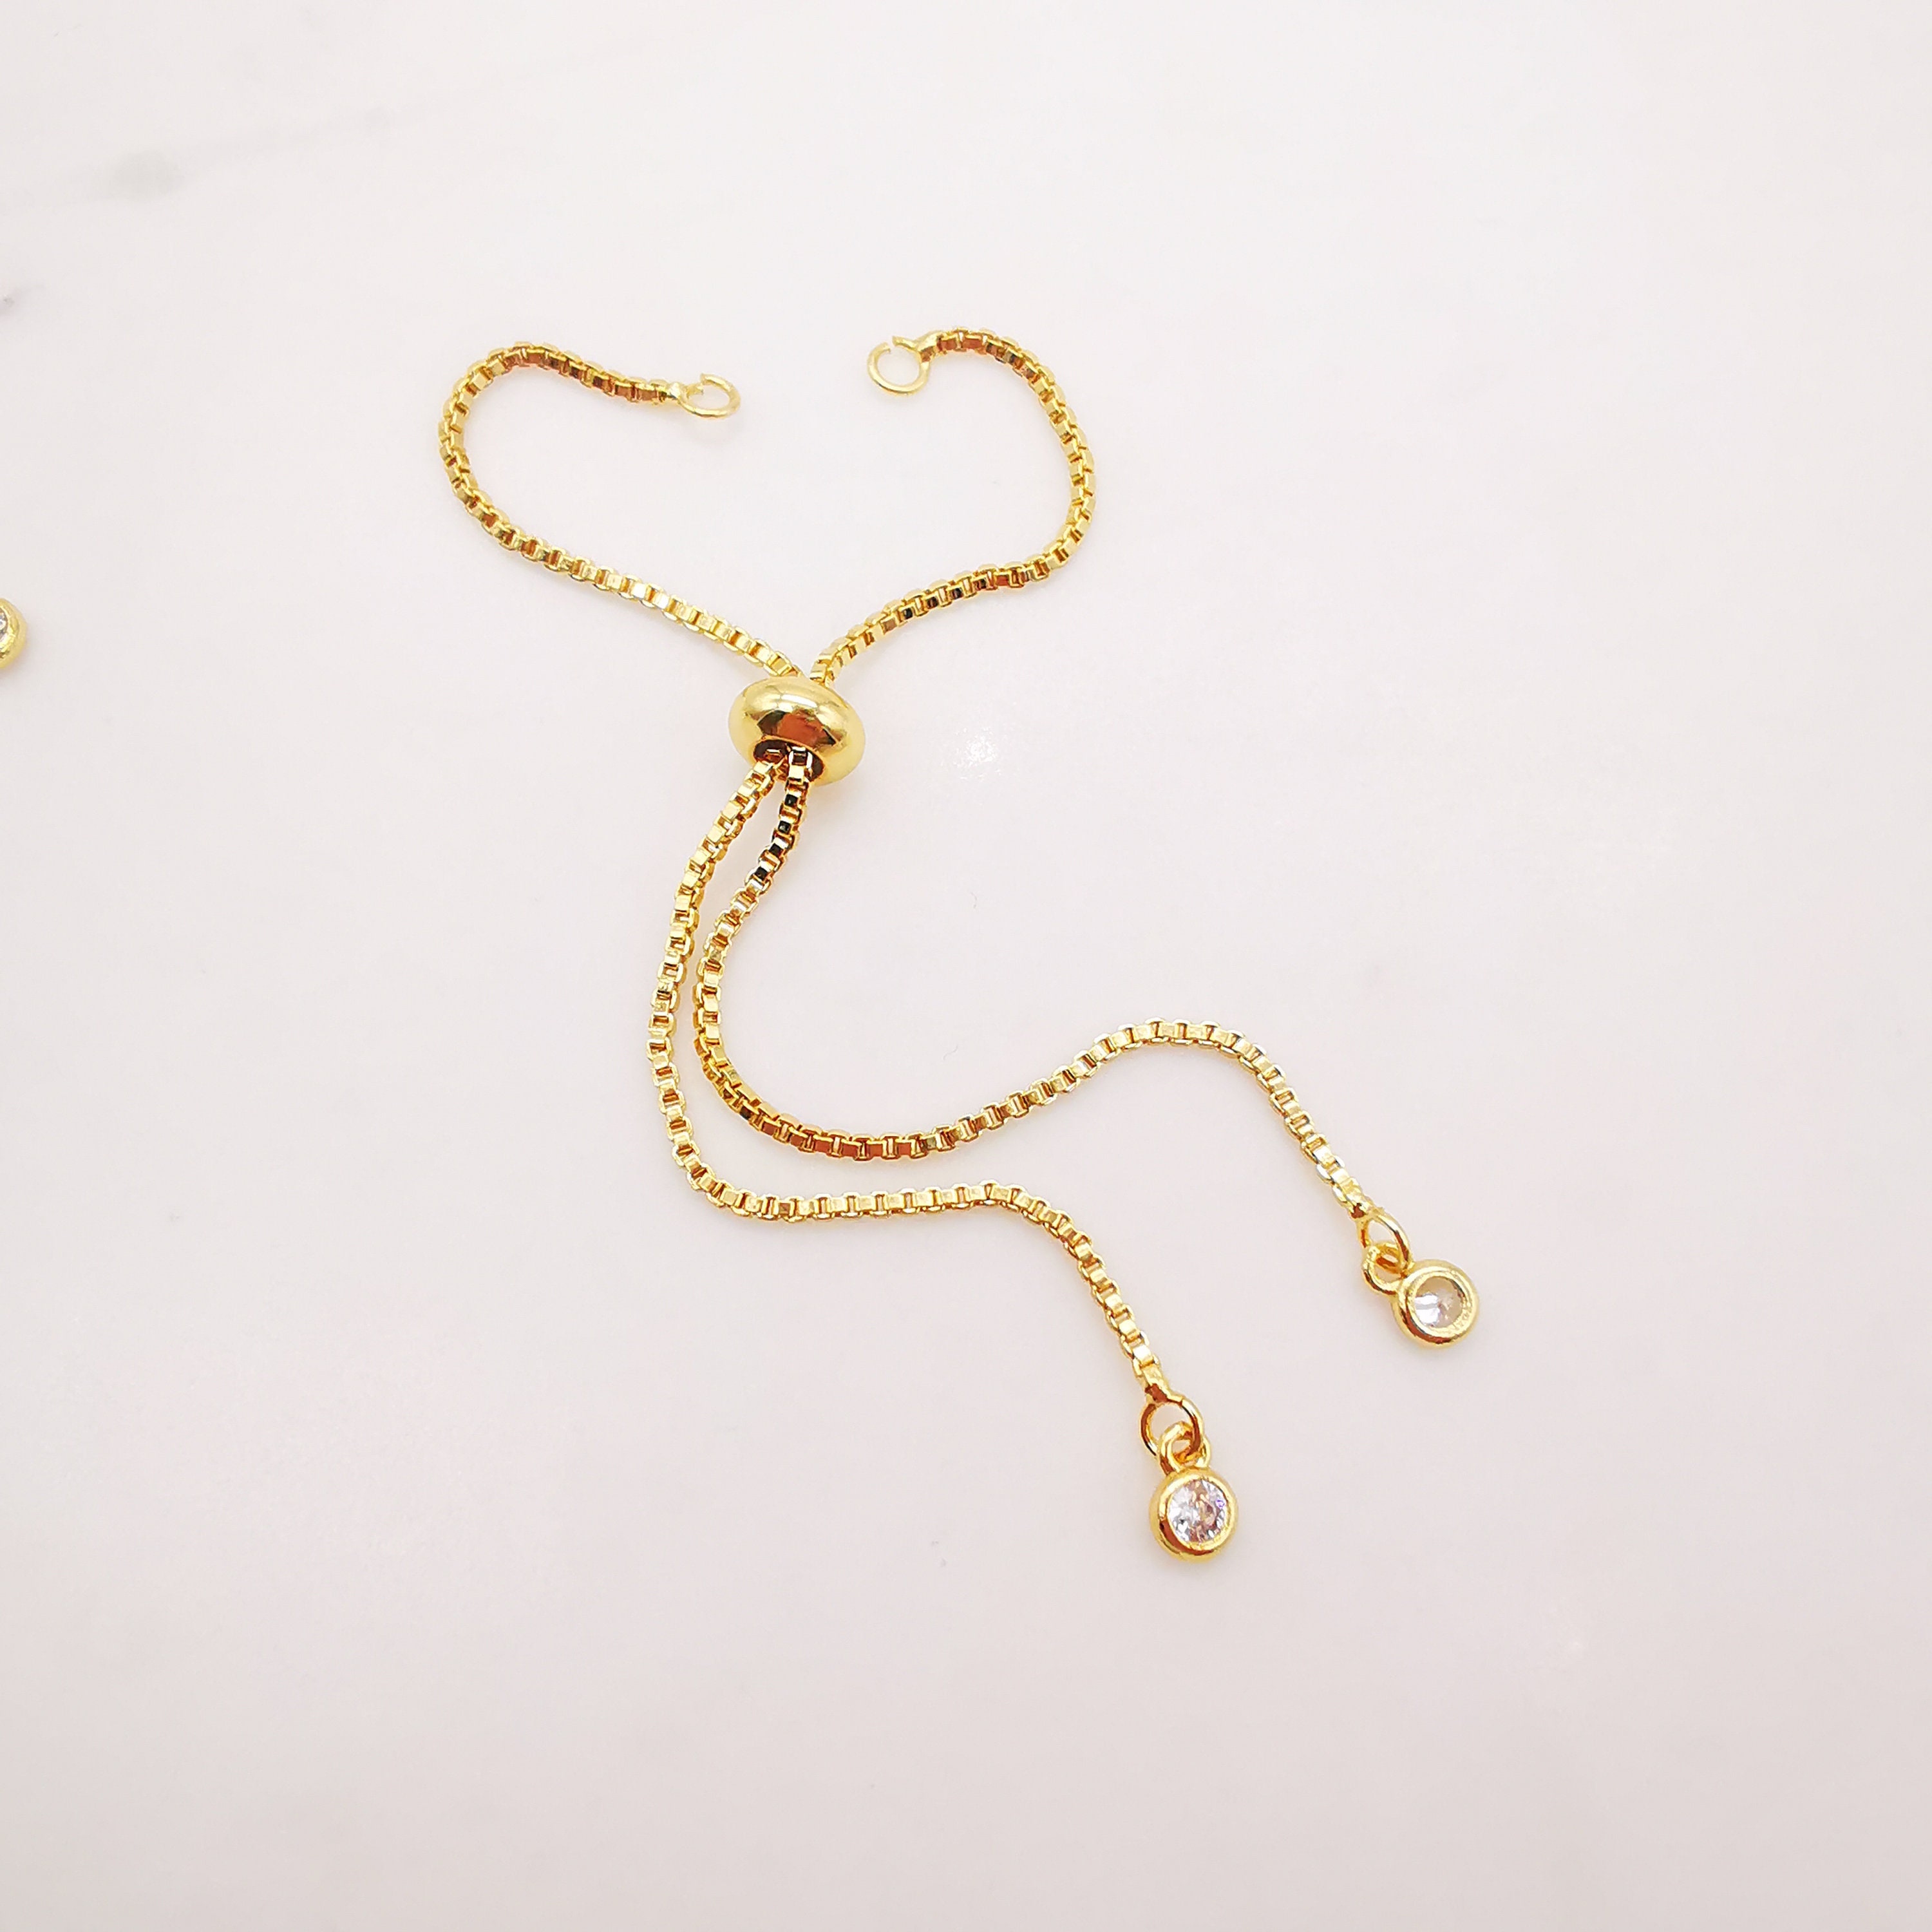 5PCS Adjustable Bracelet Making Chain For Making 18K Gold | Etsy